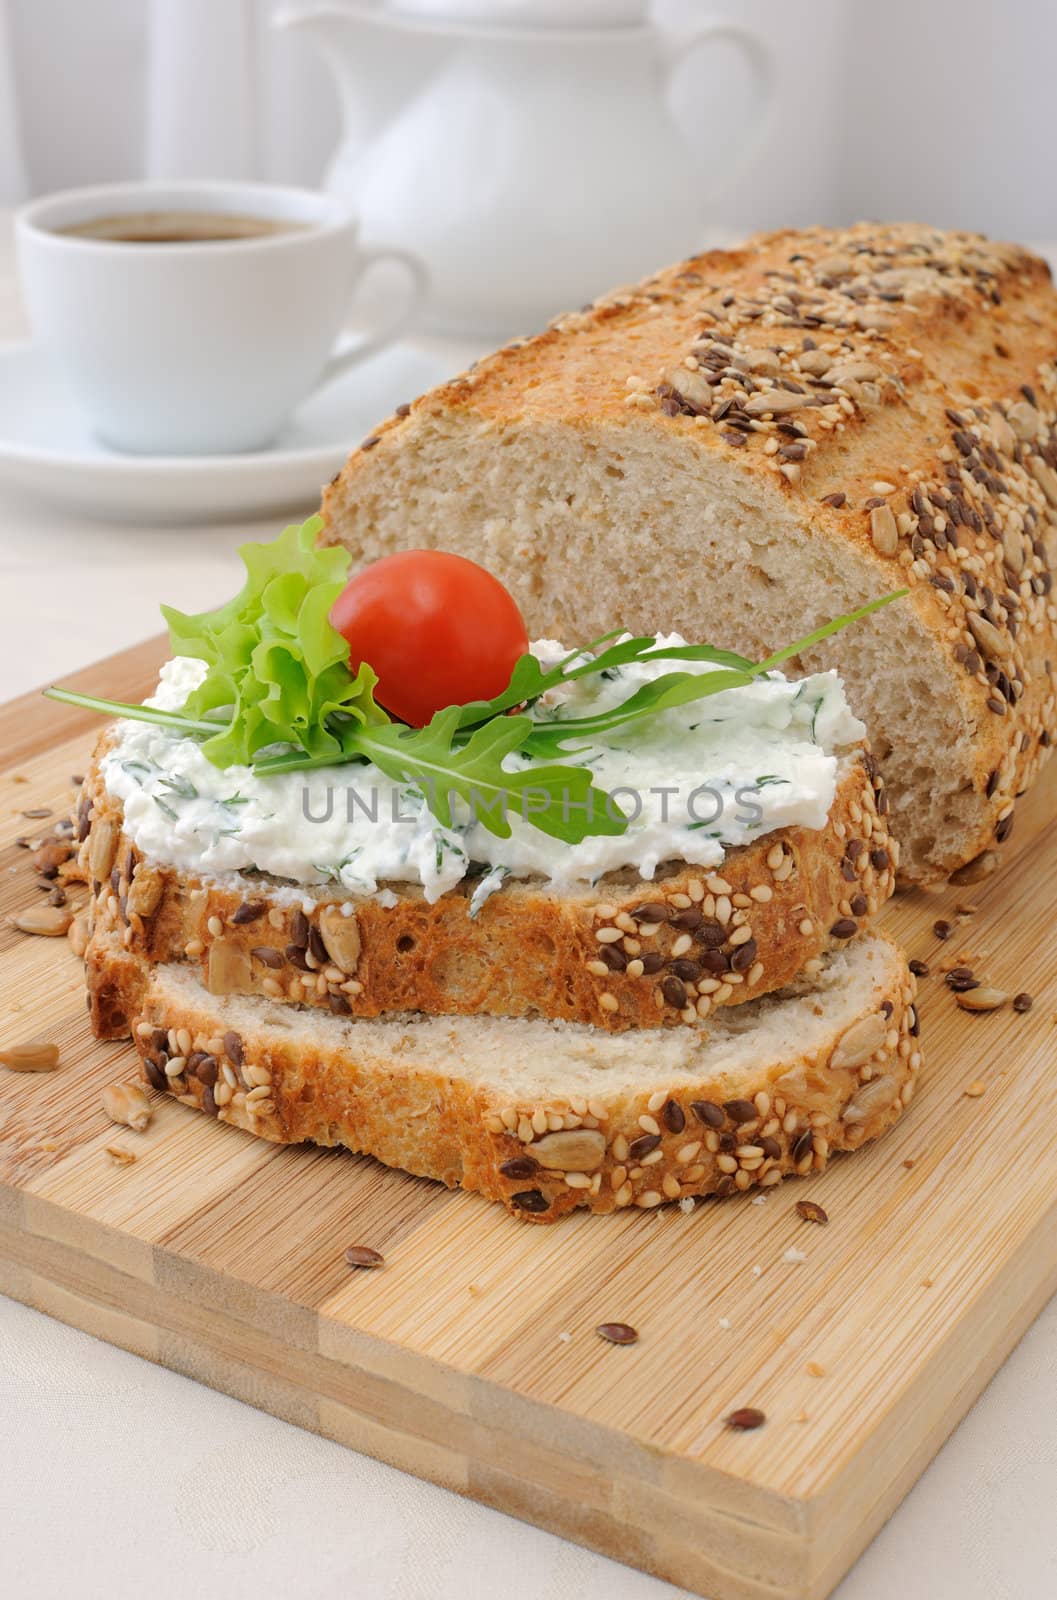 Sandwich of whole grain bread with ricotta